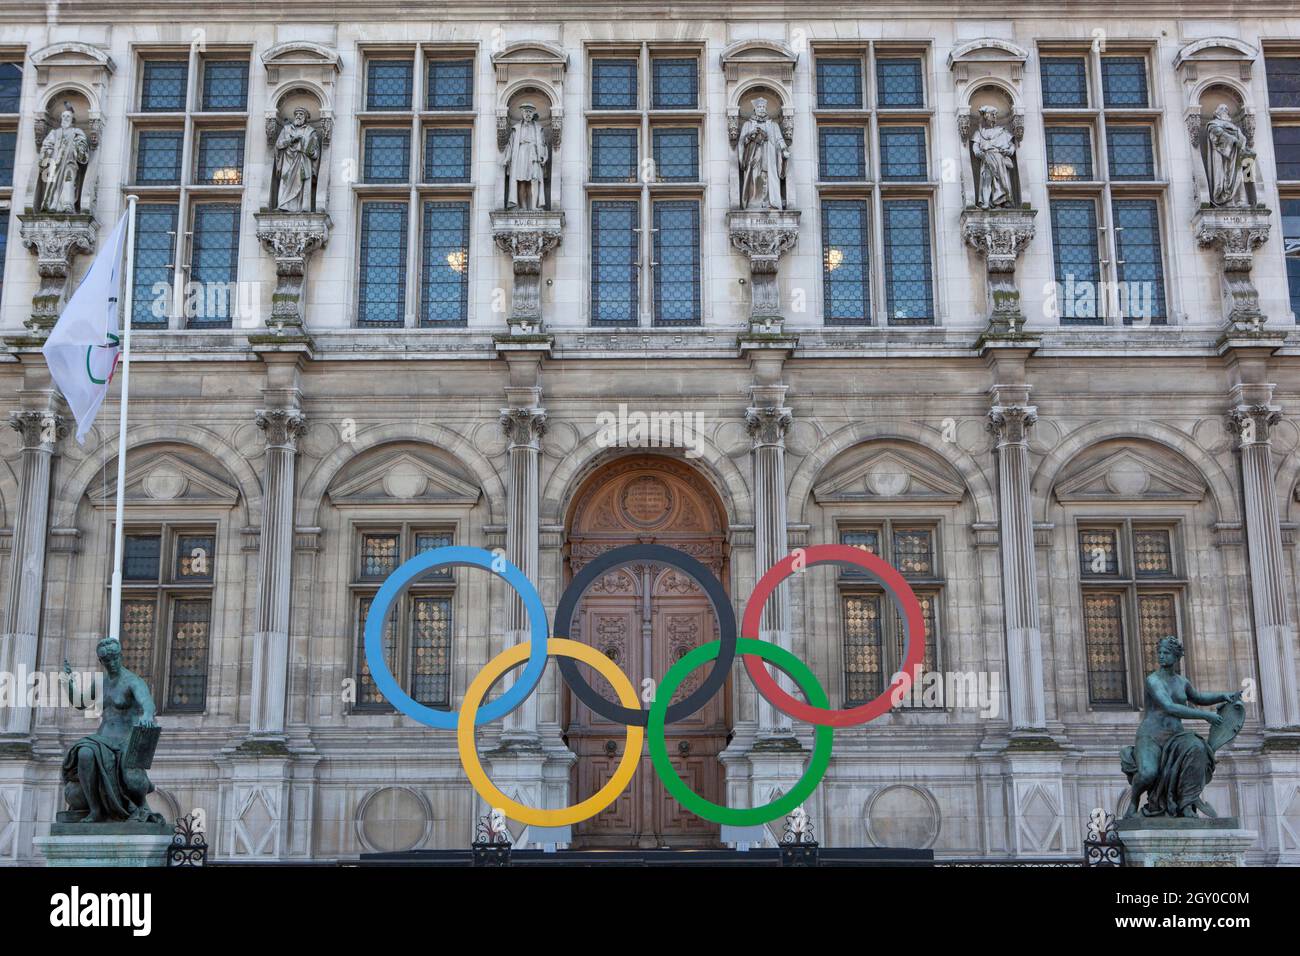 Parigi, Francia, 4 ottobre 2021: Al di fuori dell'Hotel de Ville nel centro di Parigi sono esposti gli anelli olimpici per celebrare la città che ospita i Giochi Olimpici dell'estate 2024. Anna Watson/Alamy Live News Foto Stock